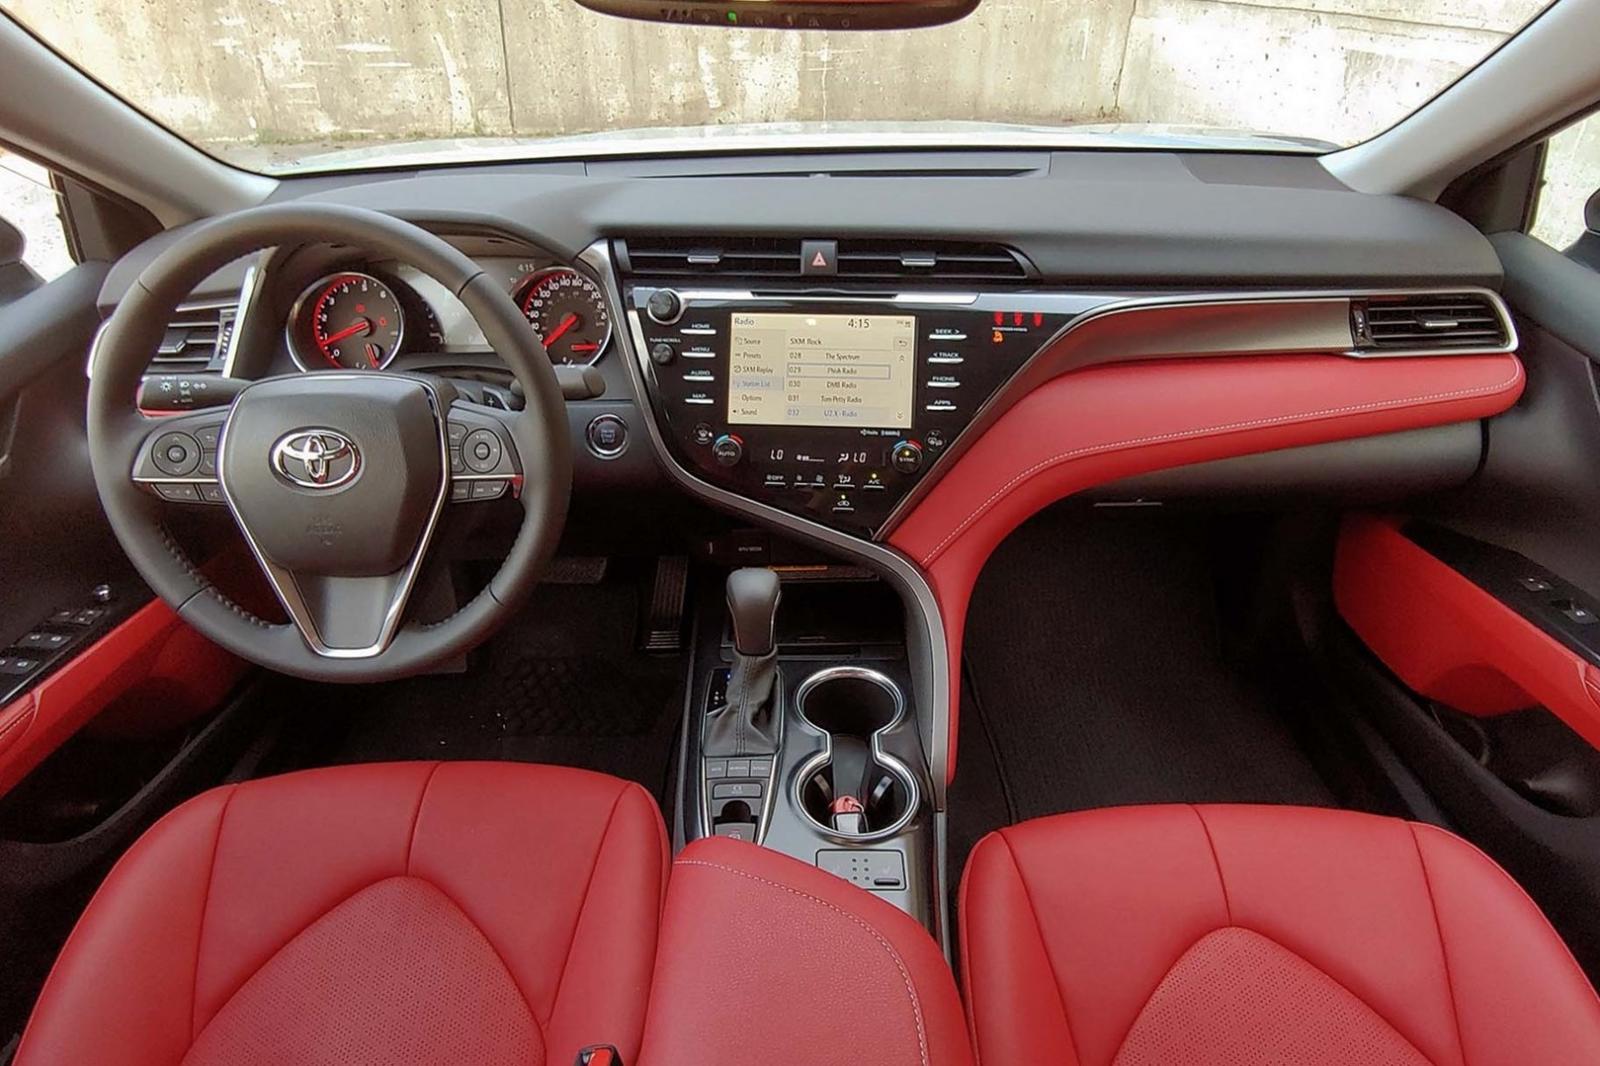 Toyota Camry SE tại Mỹ sử dụng động cơ 2.5L 4 xi-lanh, cho công suất tối đa 202 mã lực 1